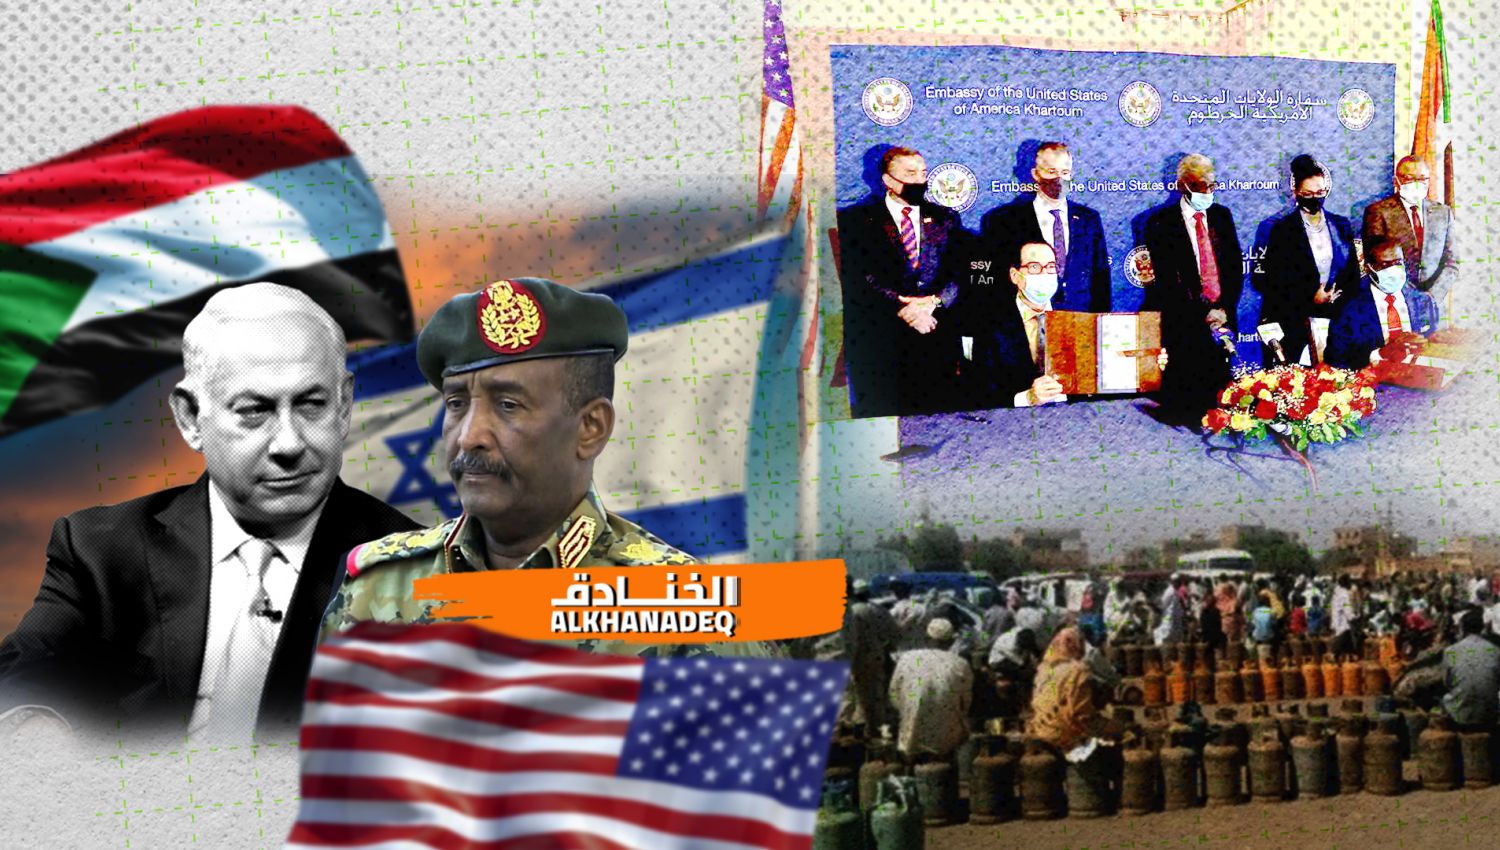 السودان...اوراق اعتماد جديدة لـ"إسرائيل"